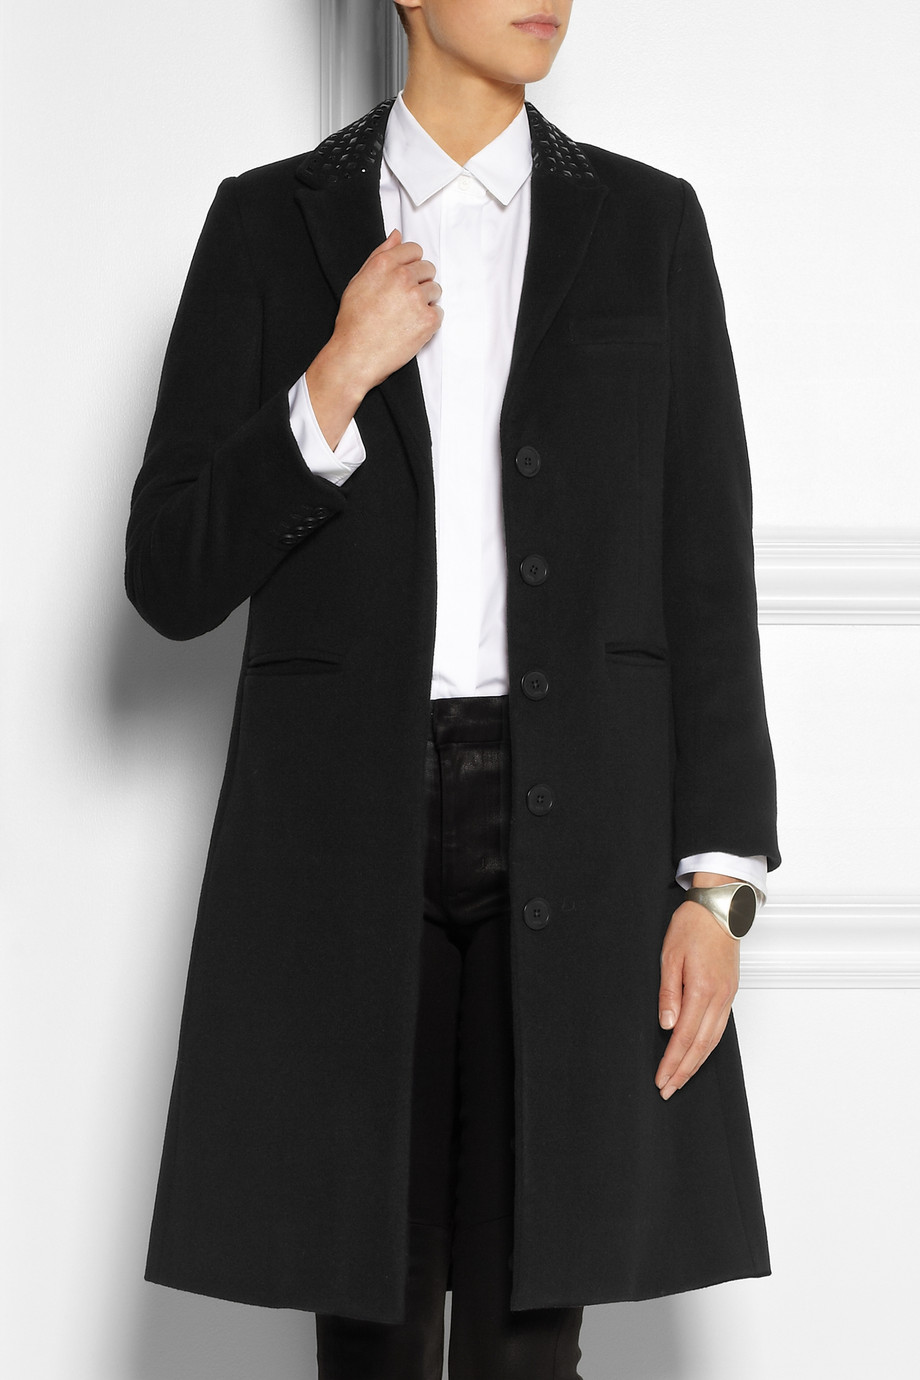 Lyst - Karl lagerfeld Odera Studded Wool-blend Felt Coat in Black